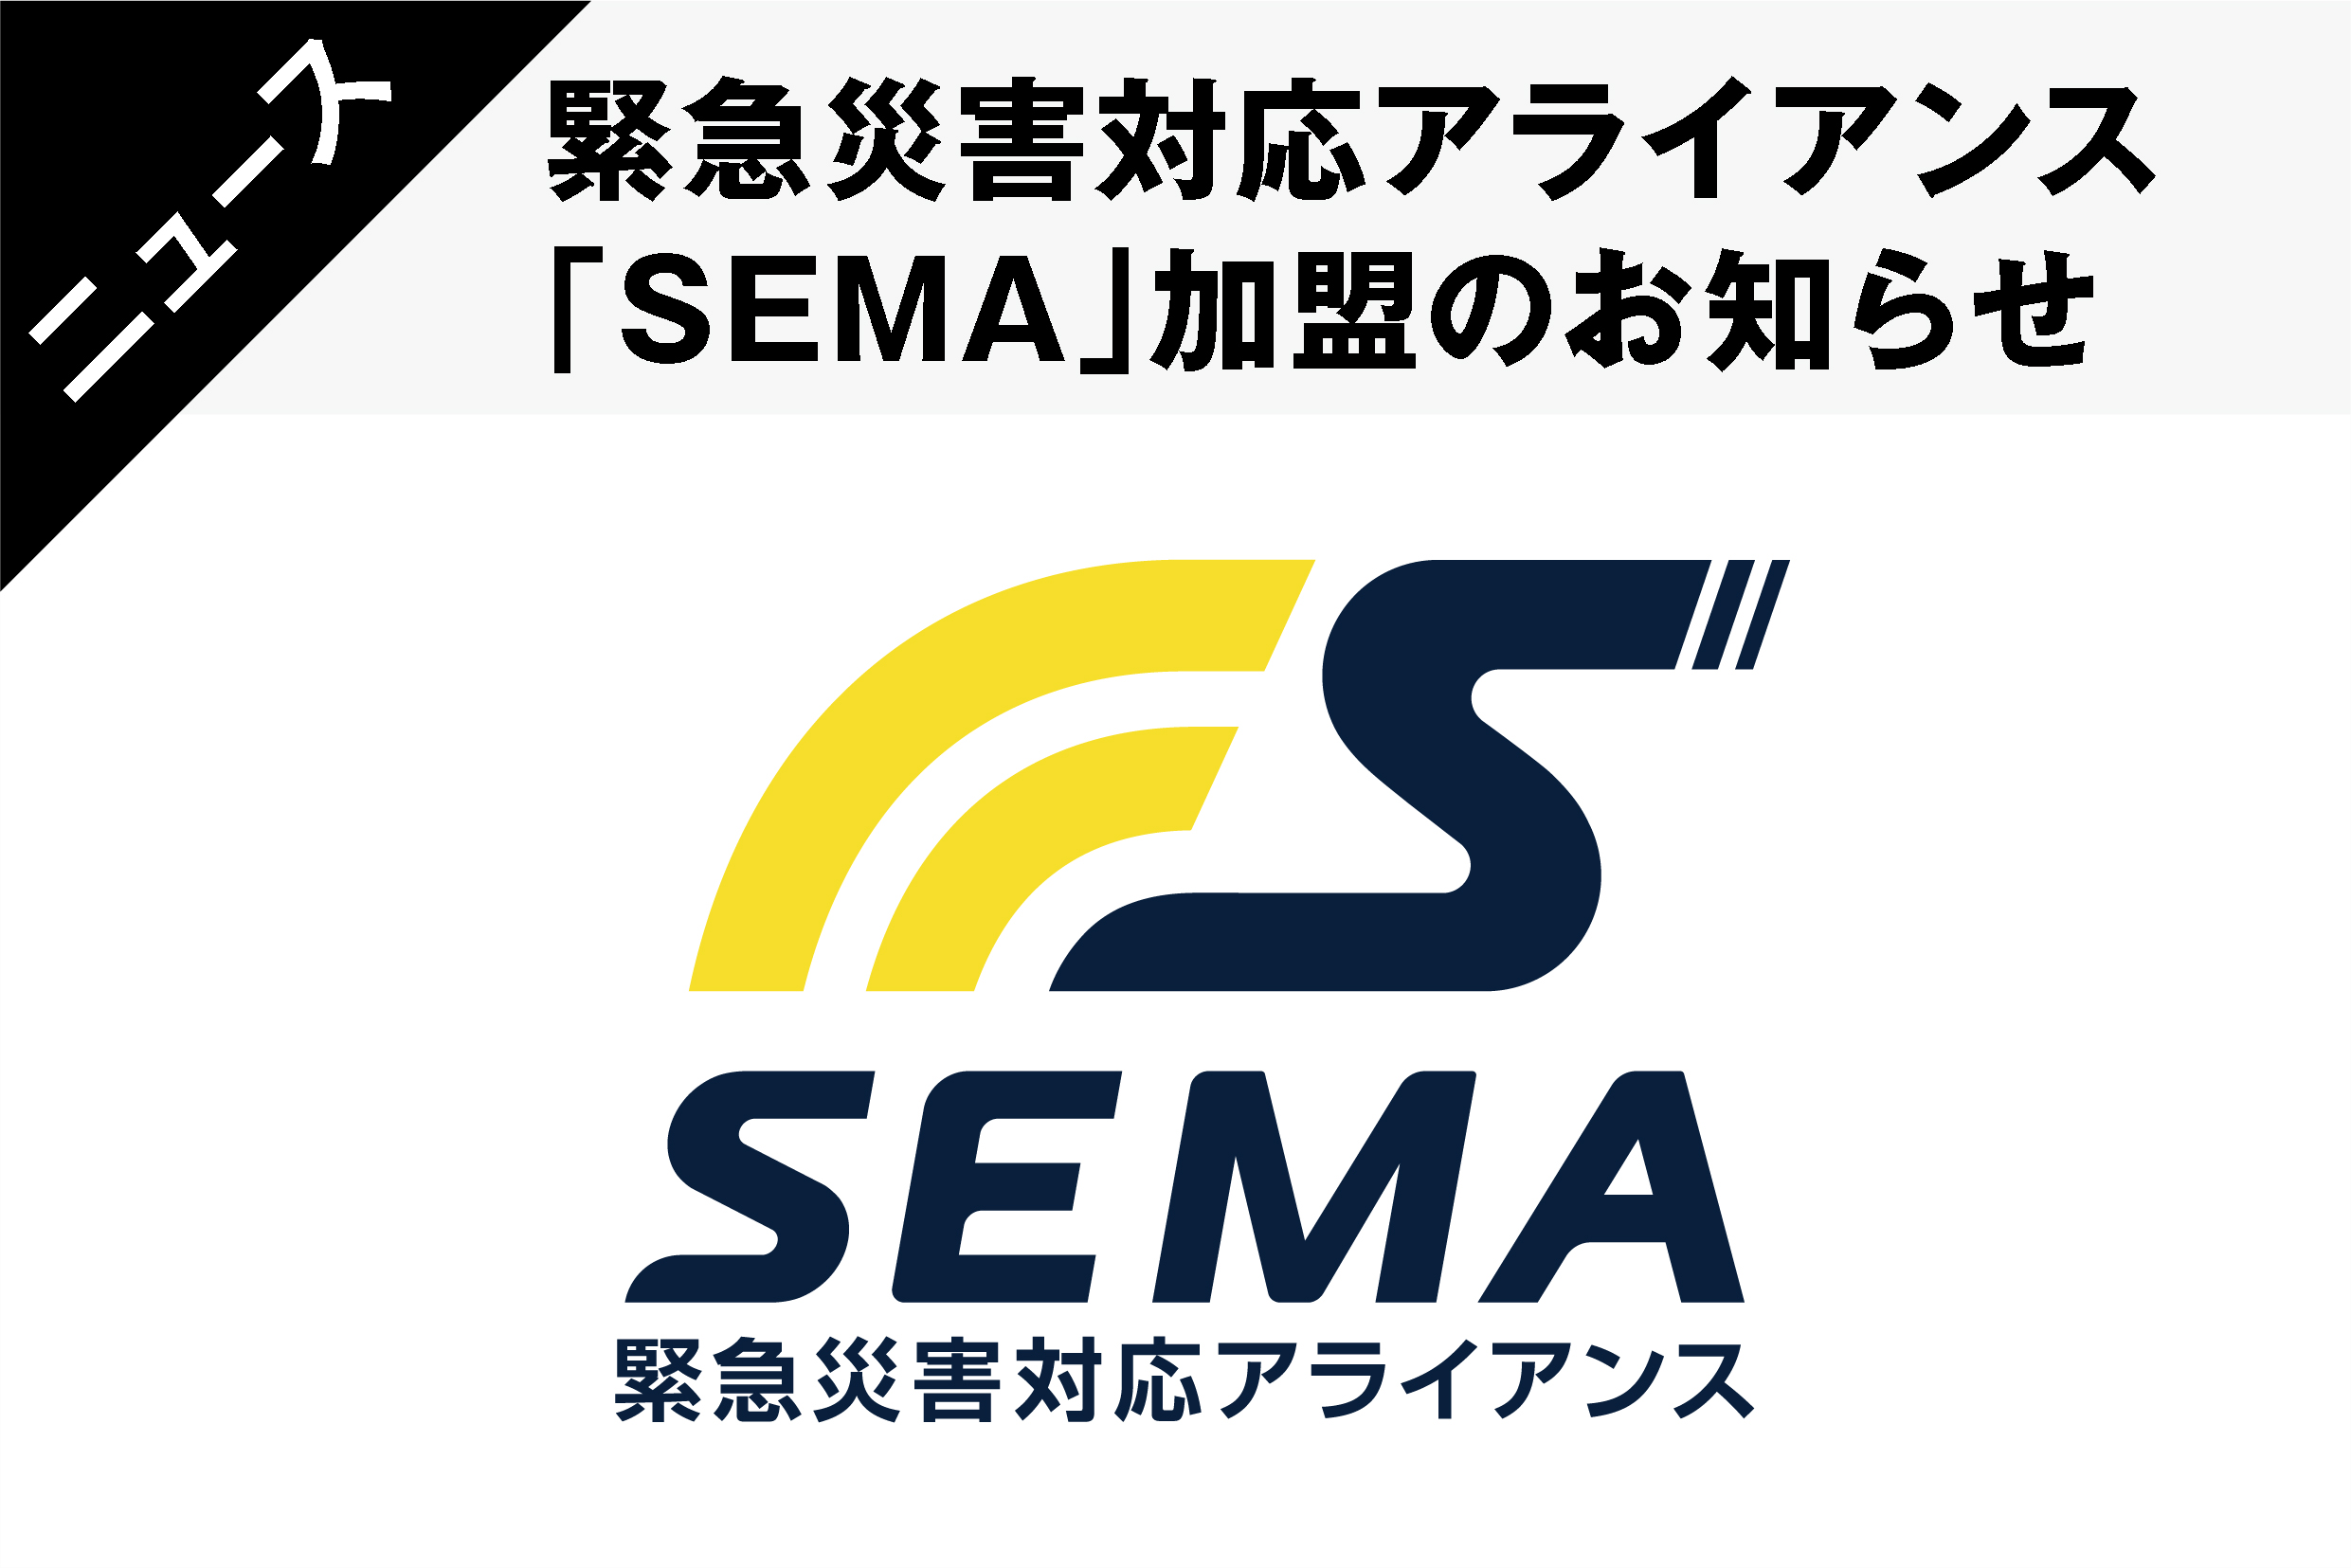  緊急災害対応アライアンス「SEMA」加盟のお知らせ 